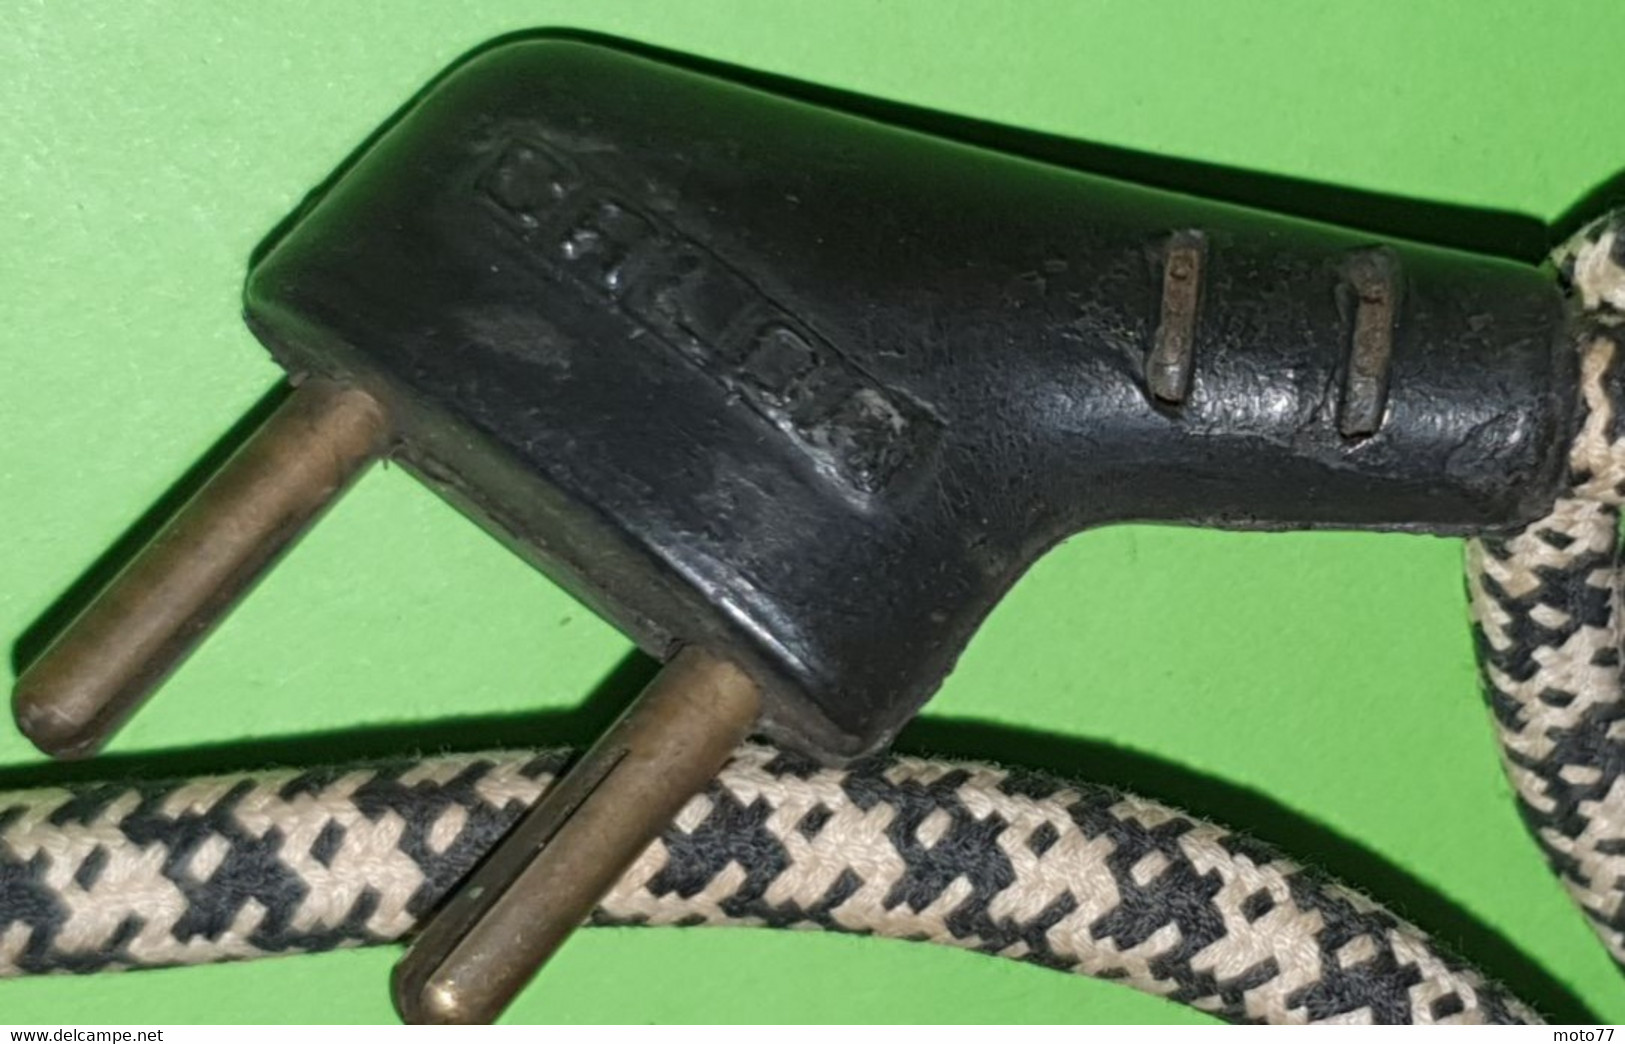 Ancien OUTIL spécial - GROS FER à SOUDER et 3 pannes cuivre 110 volt ?- acier et bois - "Laissé dans son jus"- vers 1950